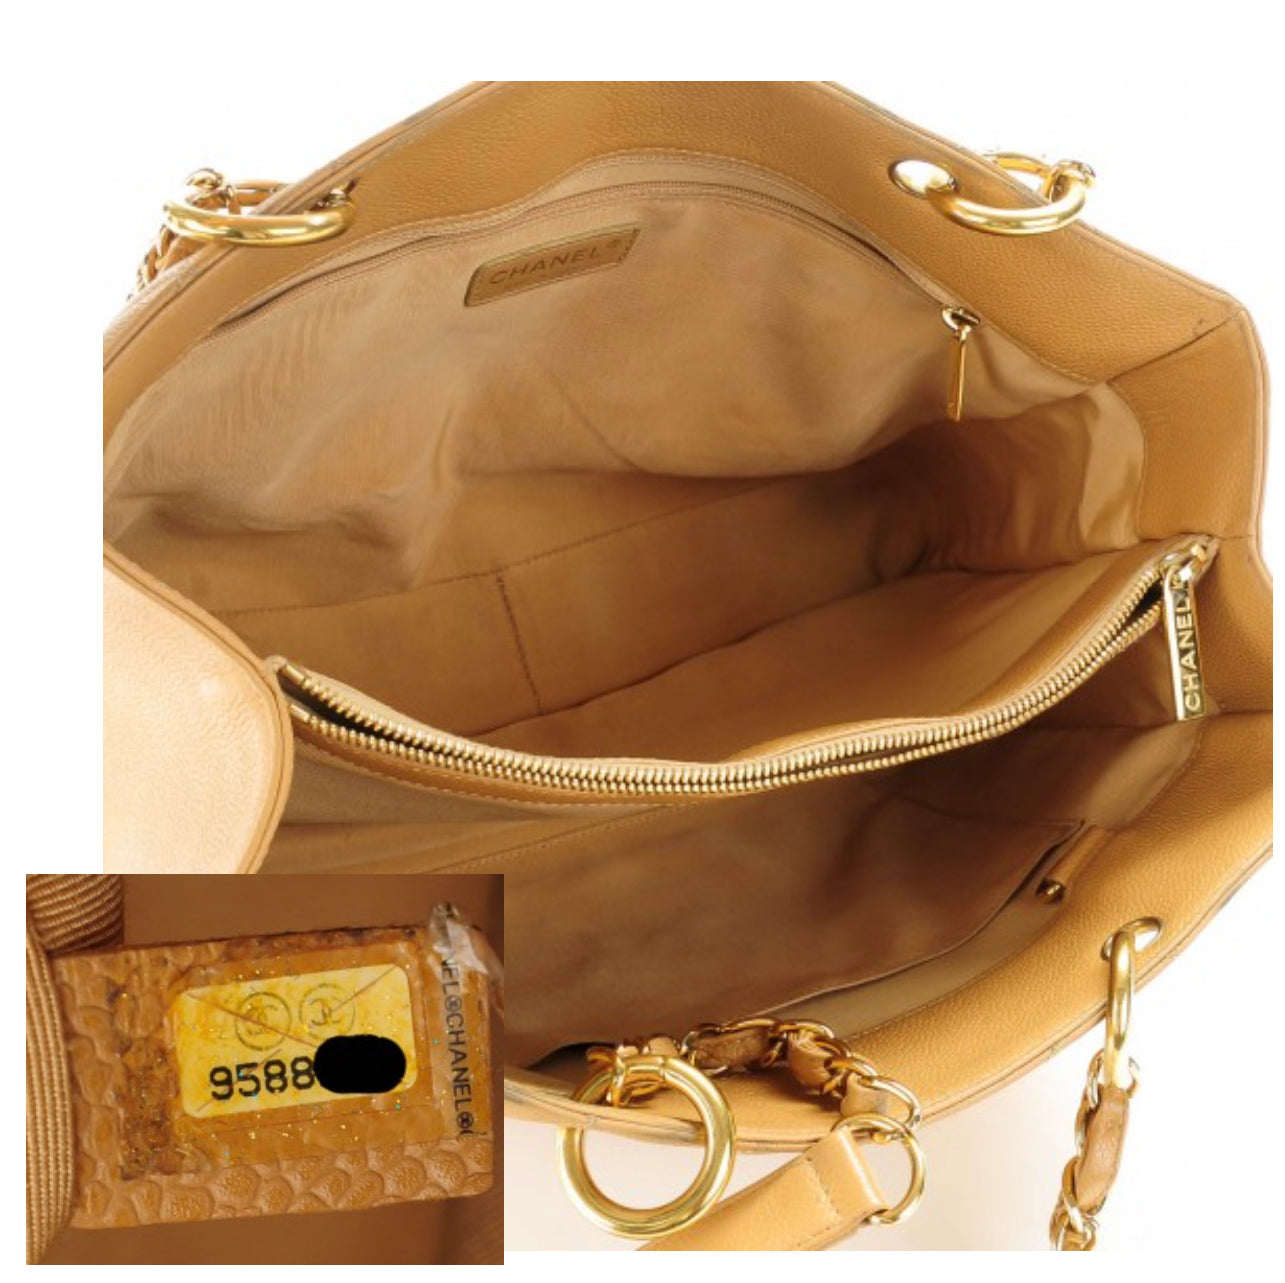 Lot - CHANEL Caviar Leather Grand Shopper Tote (GST) Bag